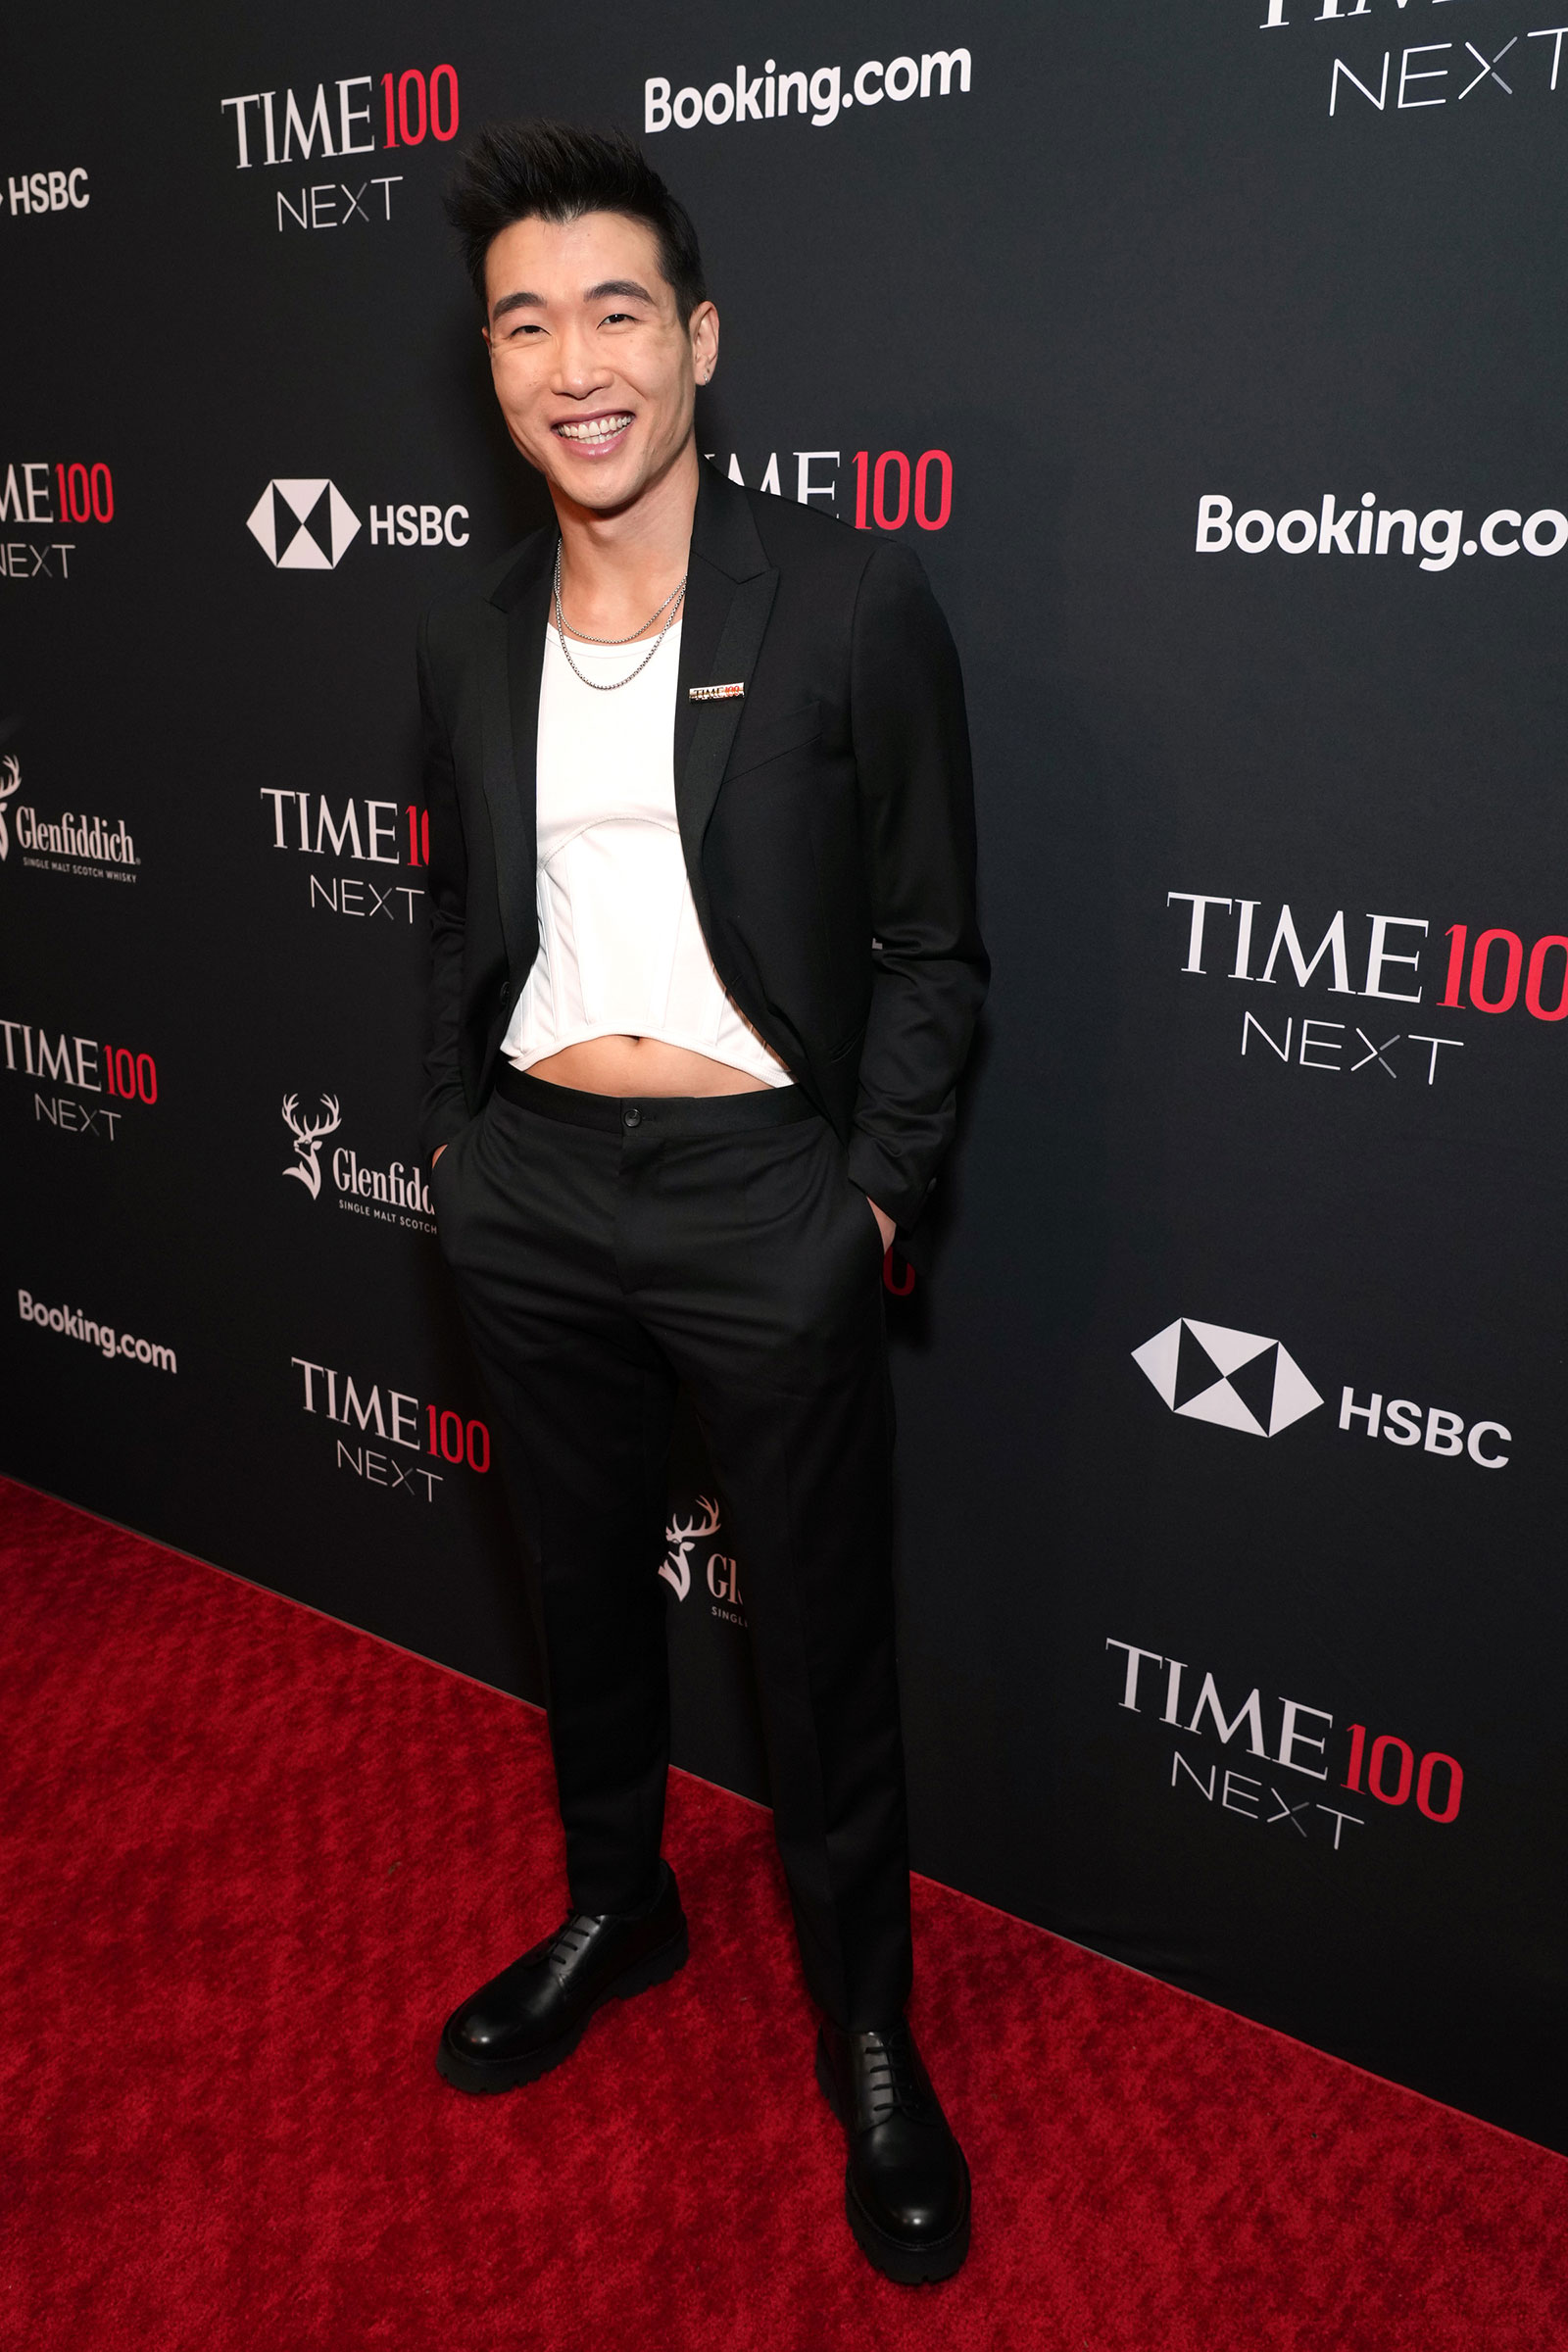 جوئل کیم پوستر بازیگر و کمدین در مراسم TIME100 Next Gala در شهر نیویورک شرکت می کند.  (کوین مازور-گتی ایماژ برای دو نفر)